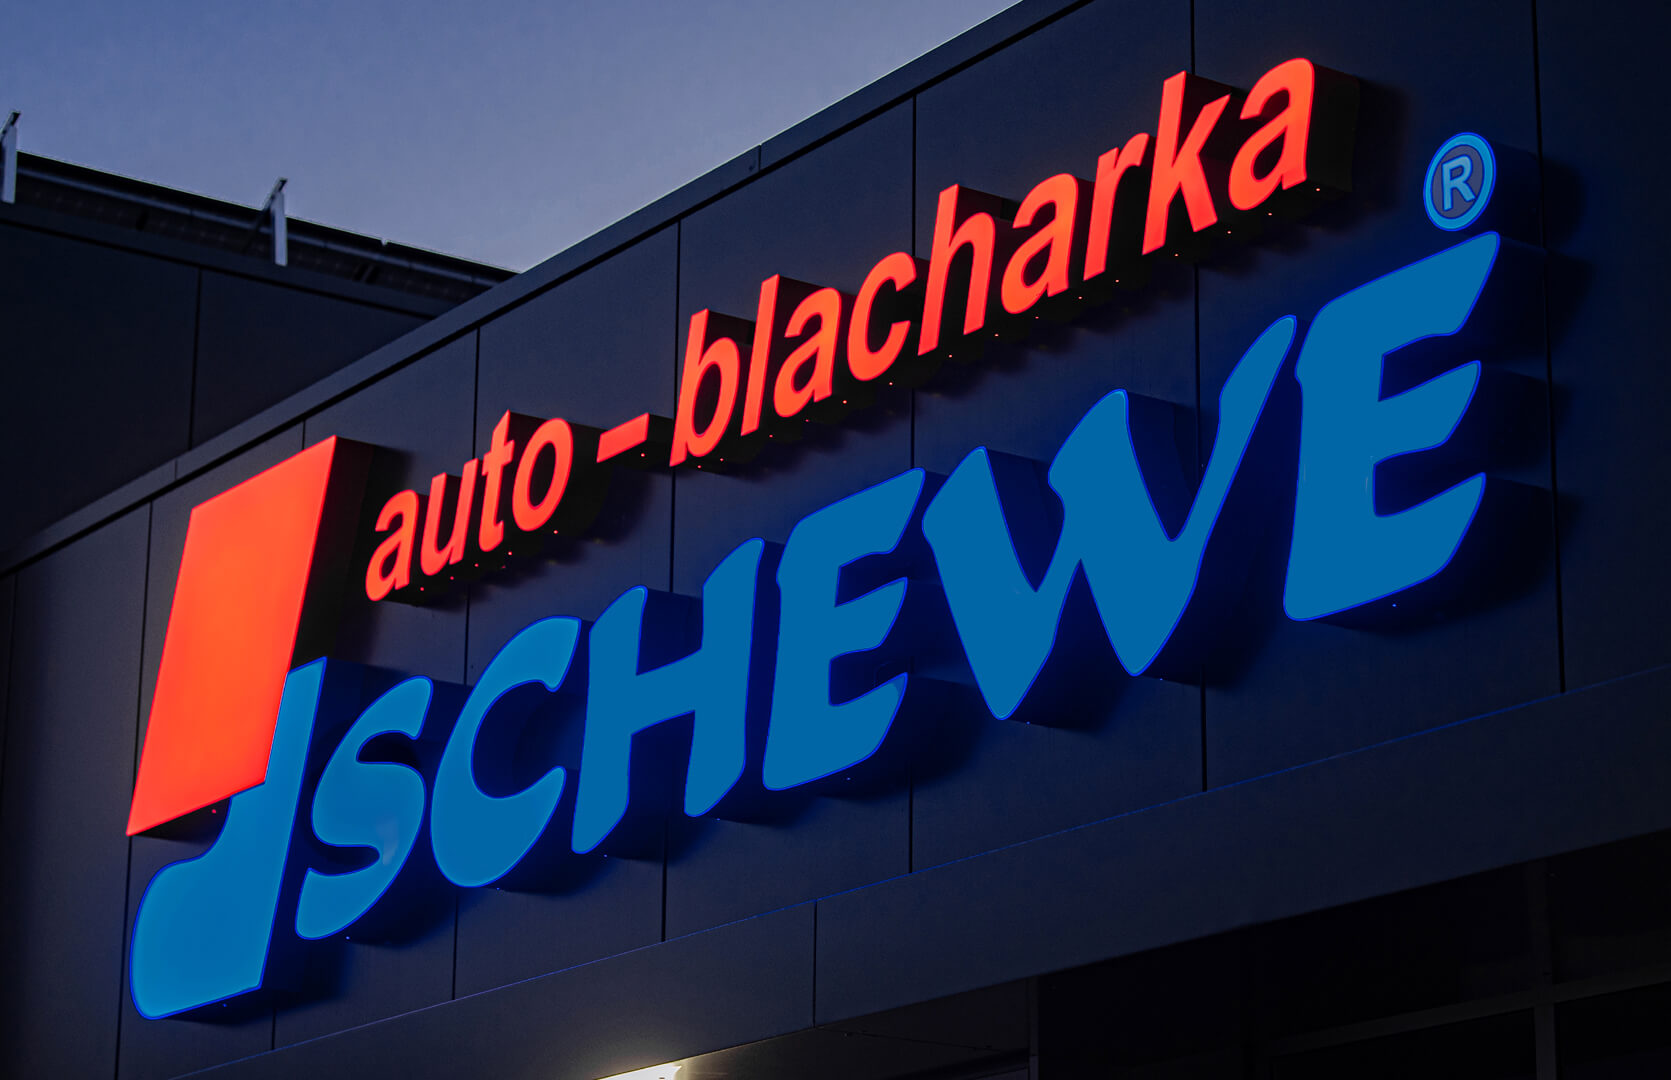 Auto blacharka Schewe - Corpo auto, lettere paesaggistiche illuminate a LED.